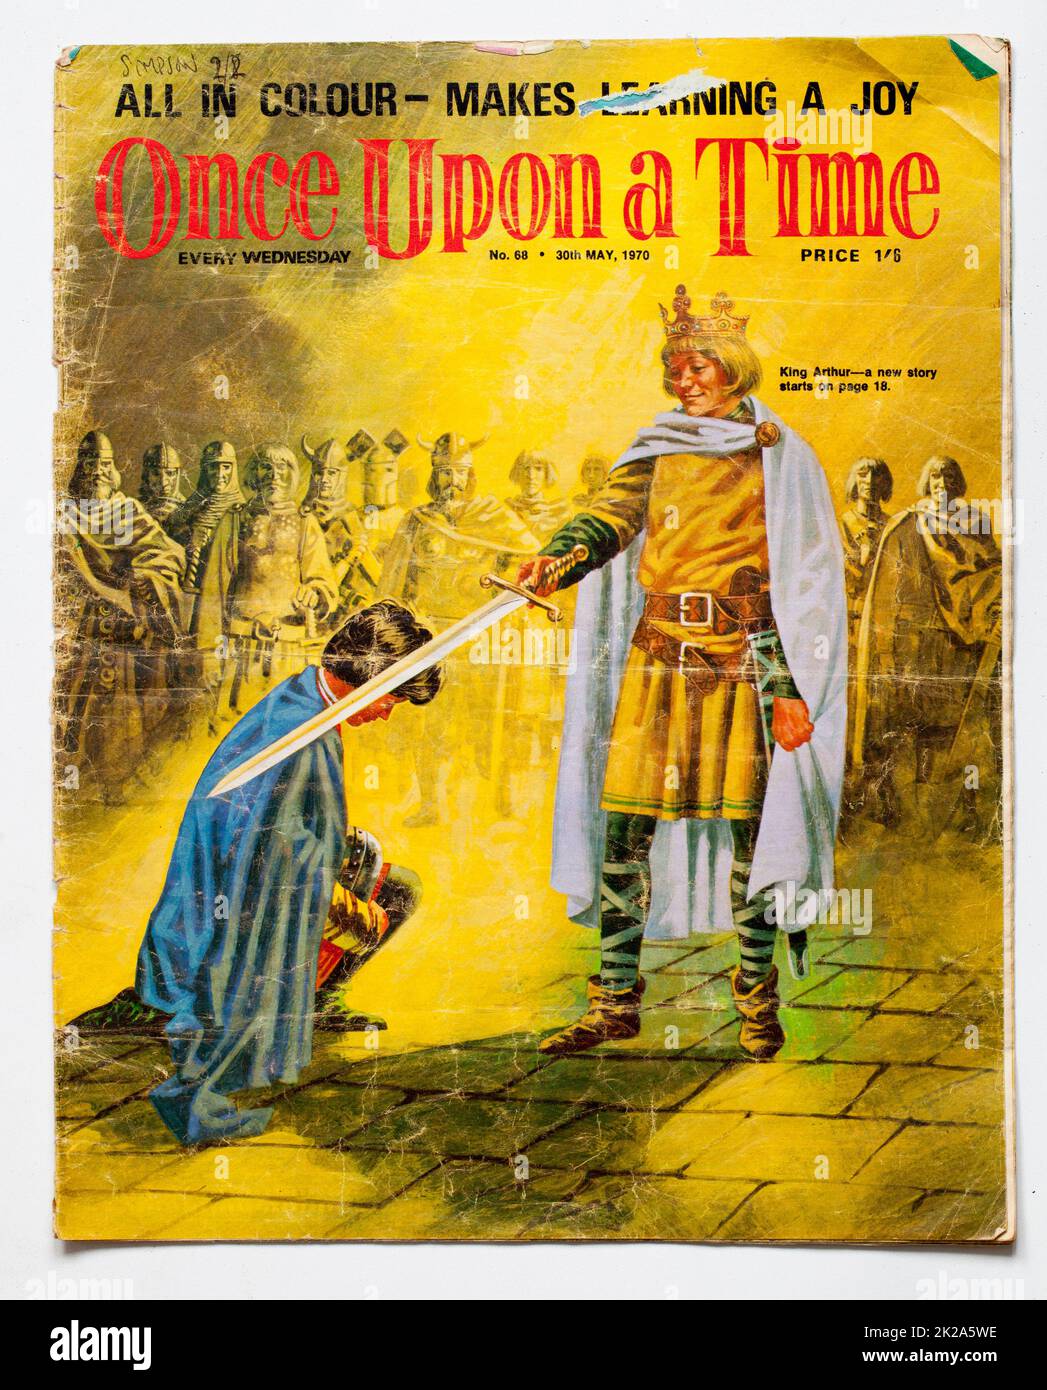 1970s Numéro de Once Upon A Time Childrens Magazine Banque D'Images